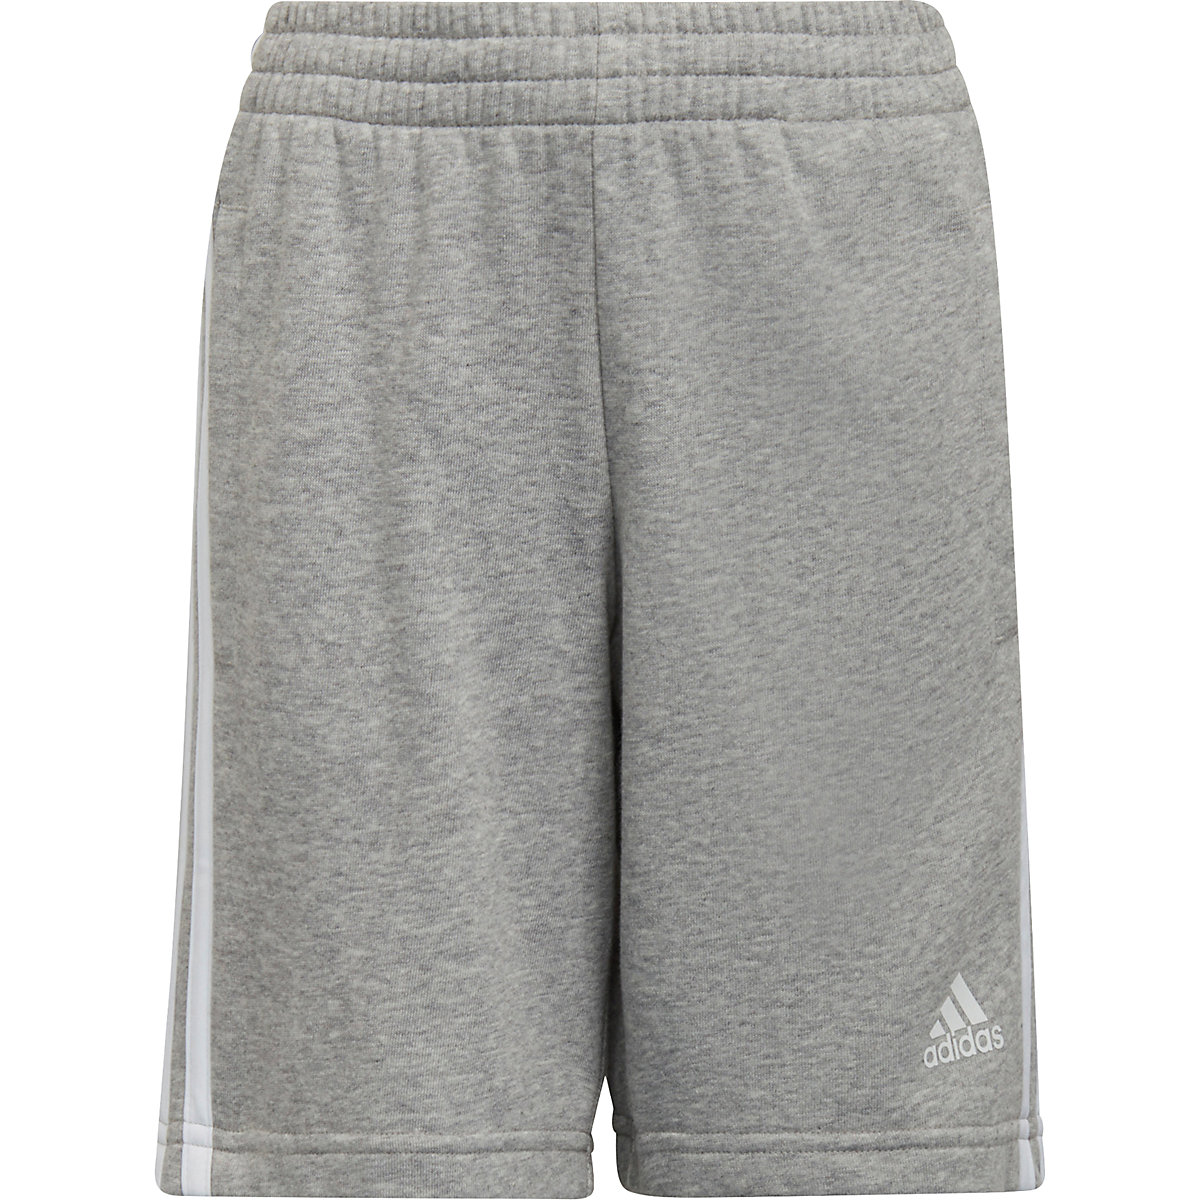 adidas Shorts LK 3S SHORT für Jungen grau/weiß